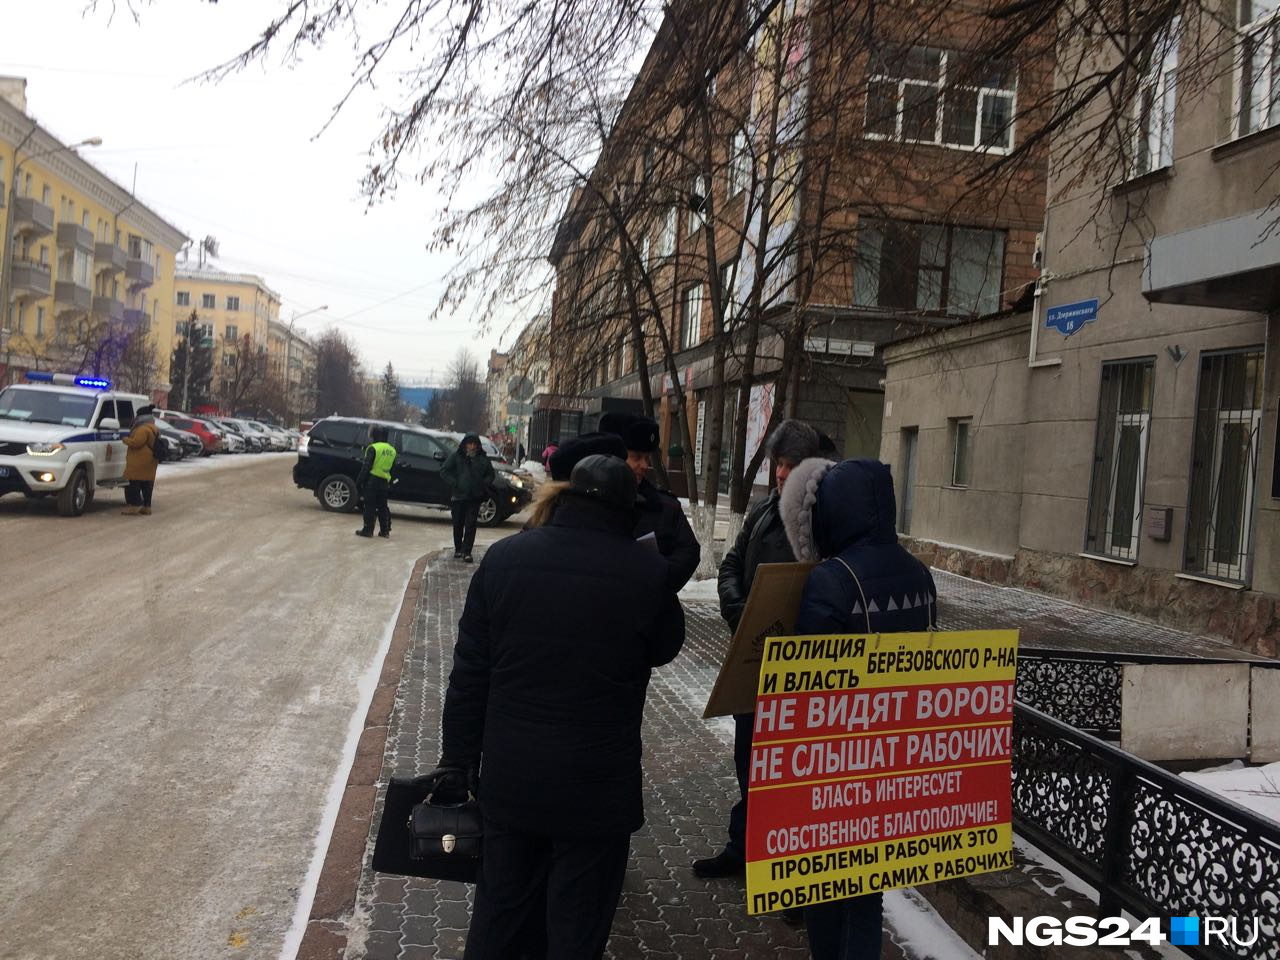 После пикета в центре красноярцам предложили личную встречу с главным полицейским края